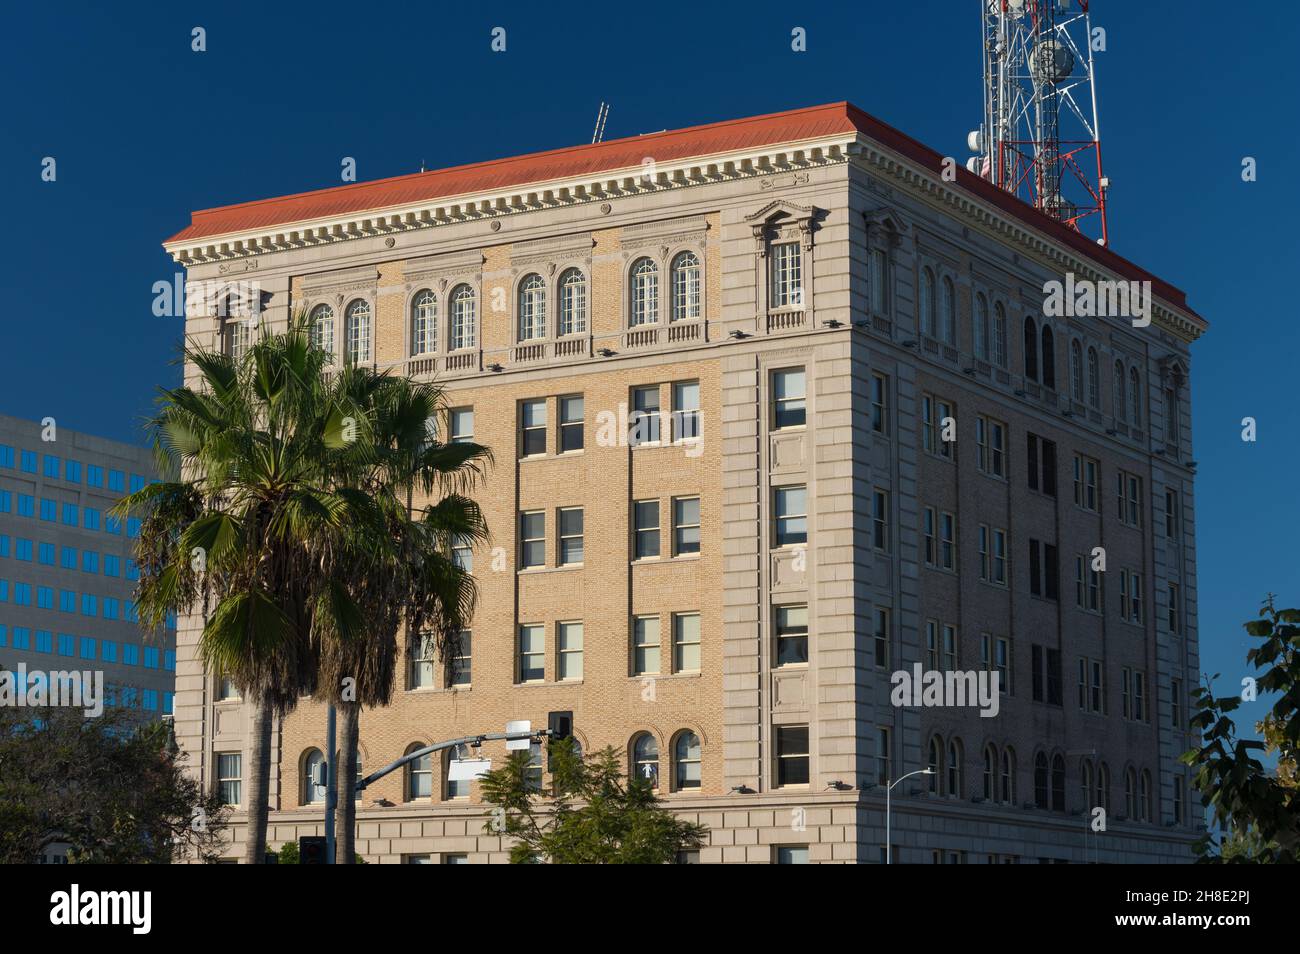 Cette image montre une vue sur l'hôtel de ville de San Pedro dans le comté de Los Angeles. Banque D'Images